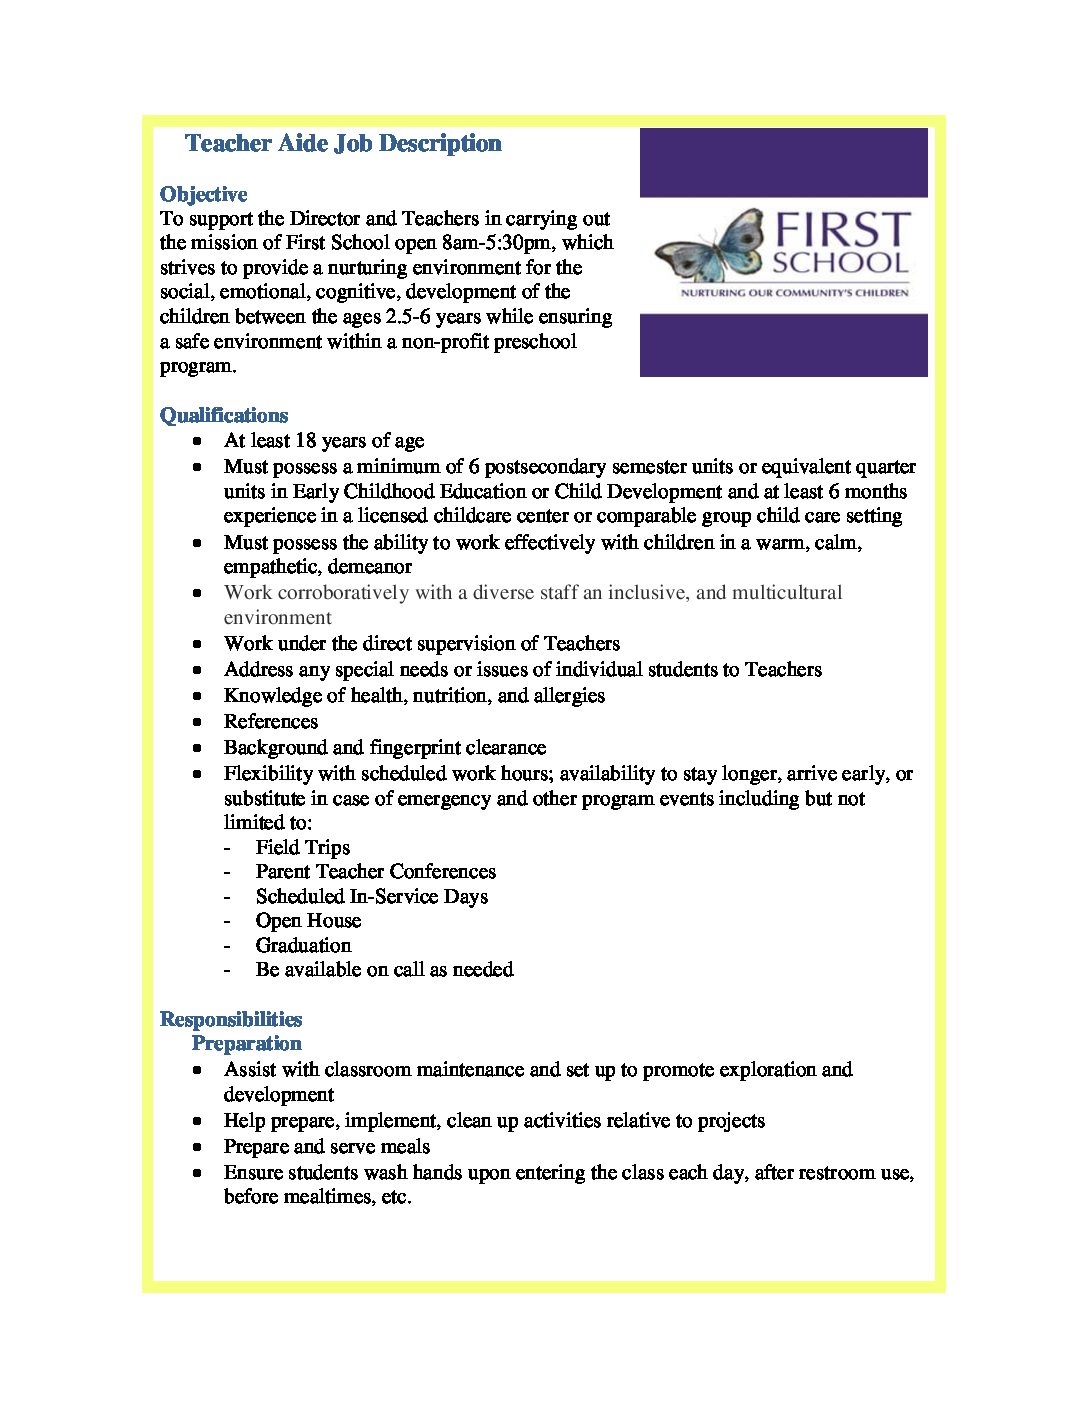 First-School-Teacher-Aid-Job-Description